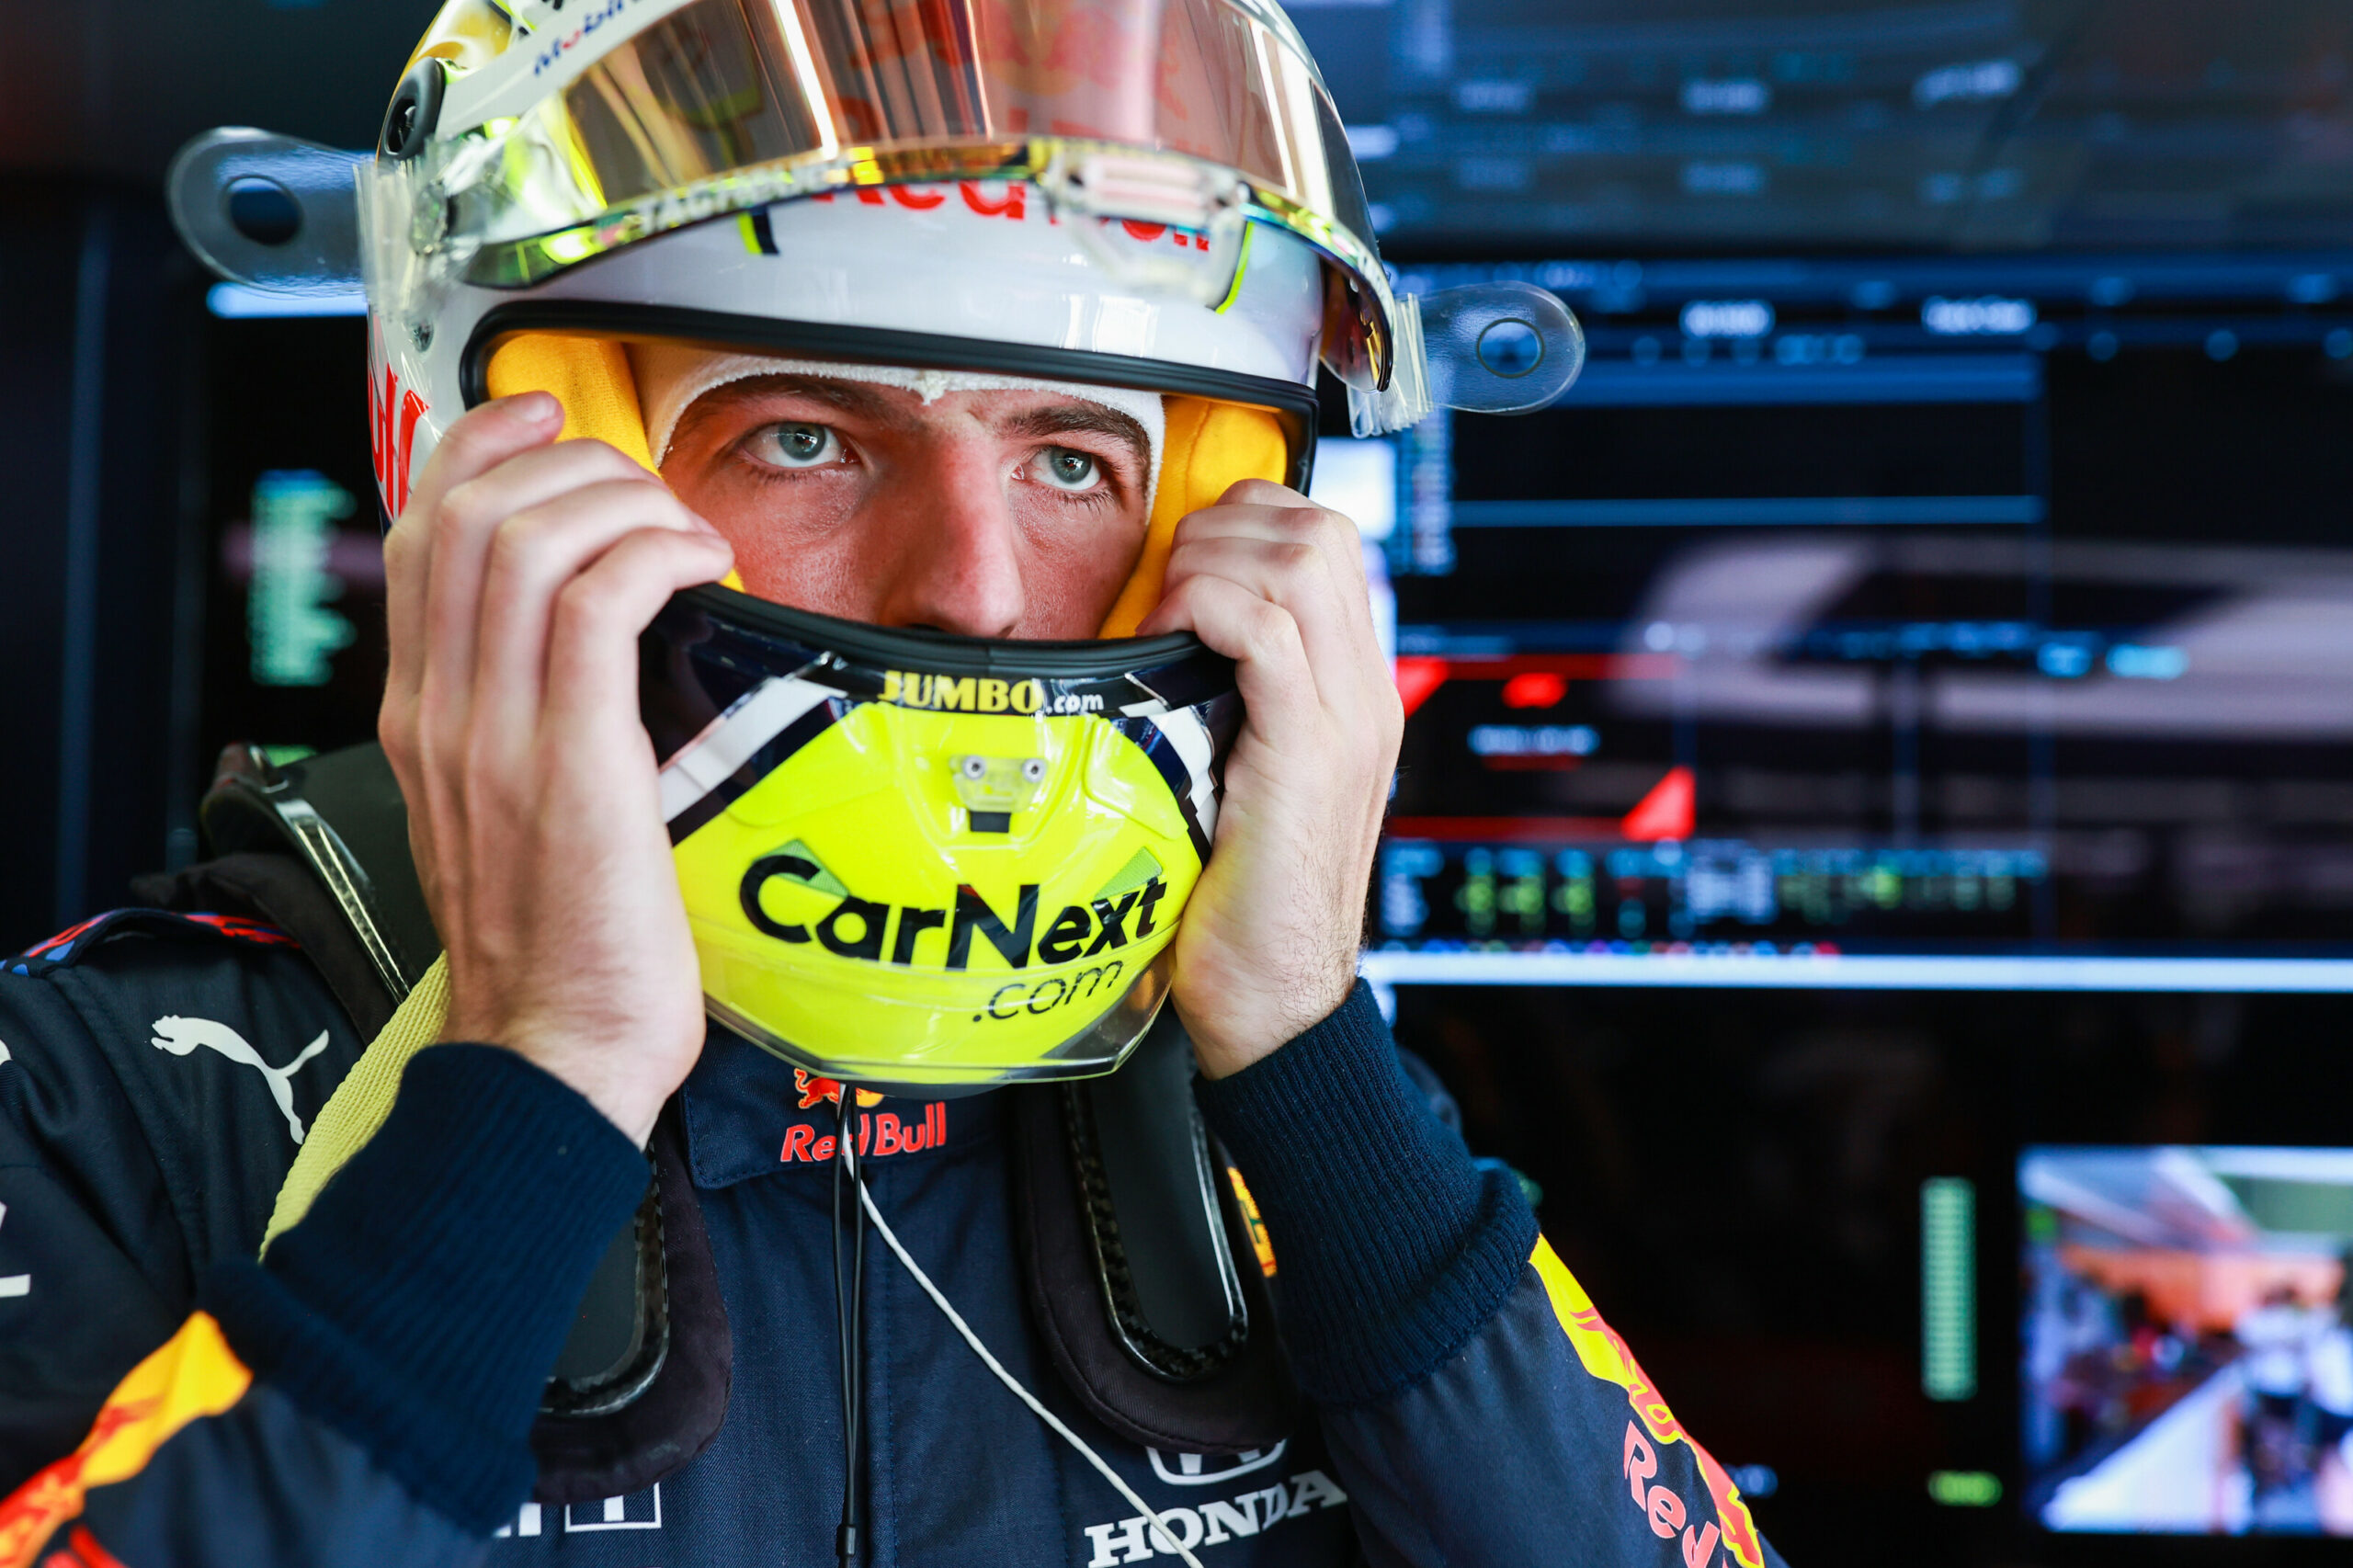 F1 - Verstappen sur-motivé en Q3 après une remarque de son ingénieur